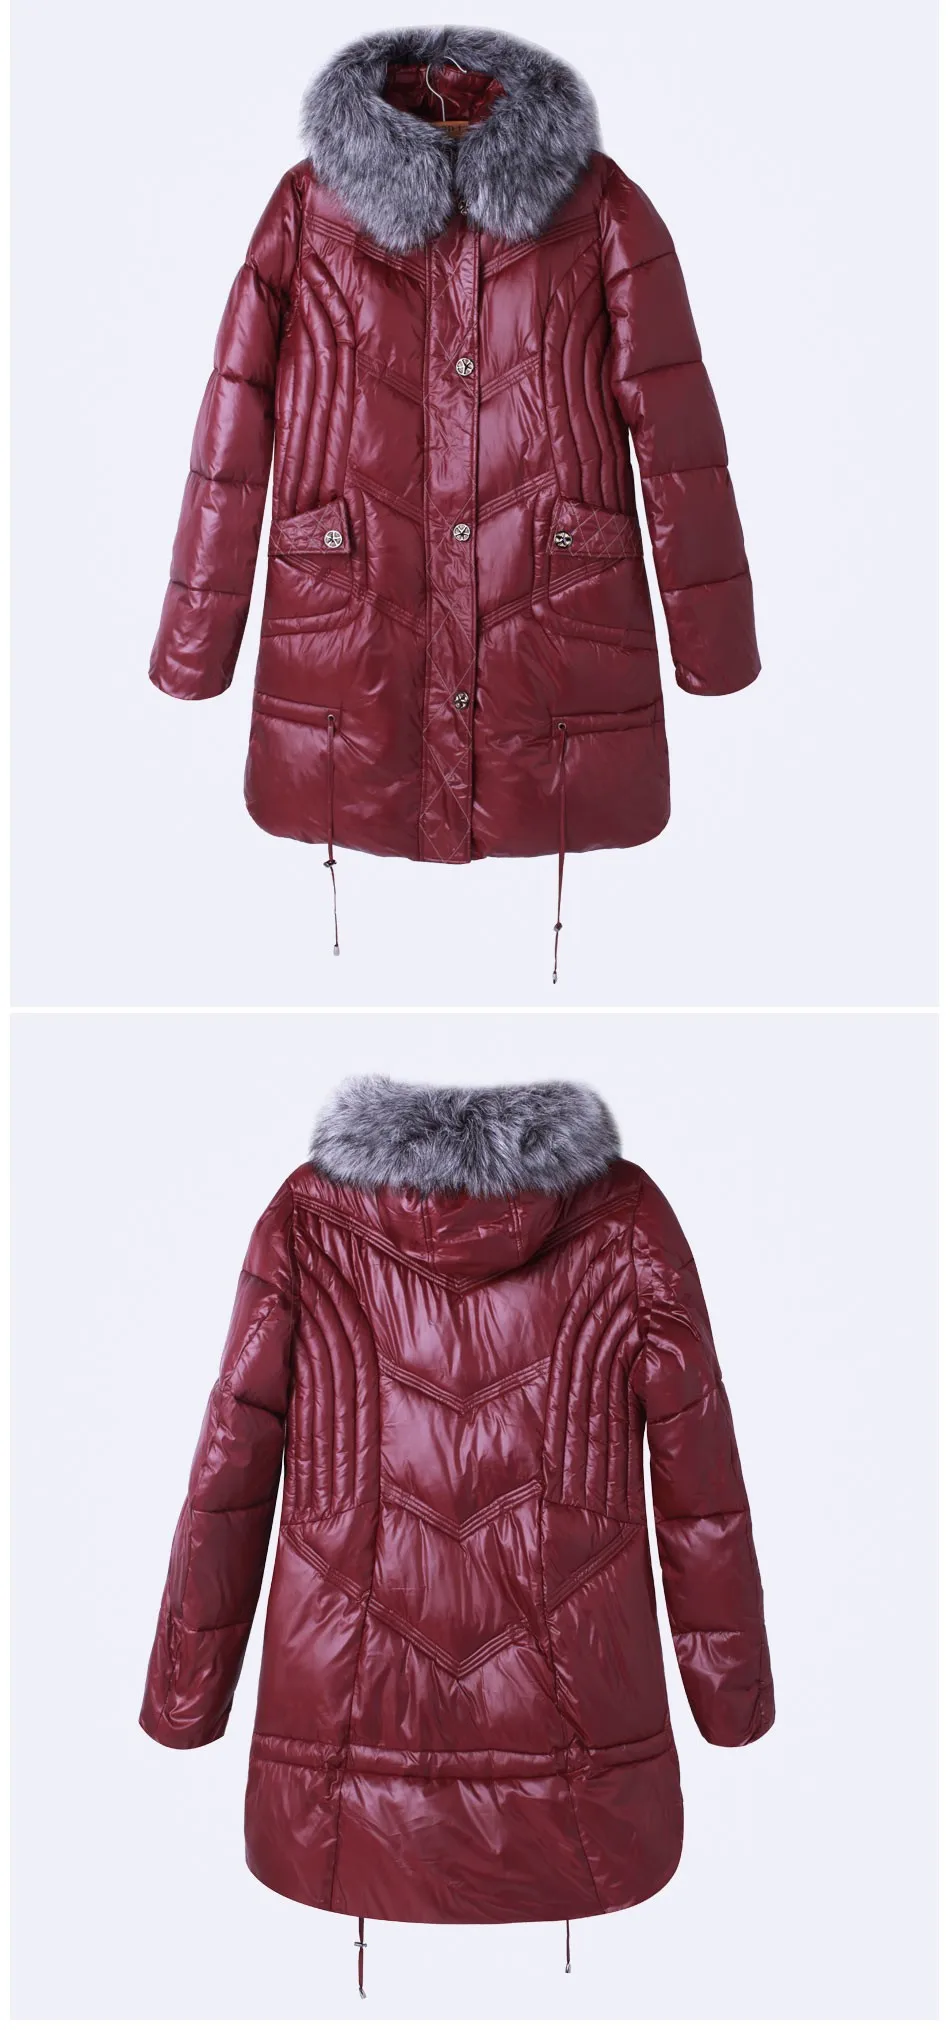 Ceprask высокое качество женская зимняя куртка-пуховик плюс Размеры x-долго женский Пальто для будущих мам модные Мех животных Теплая парка Camperas 4XL 5XL 6XL